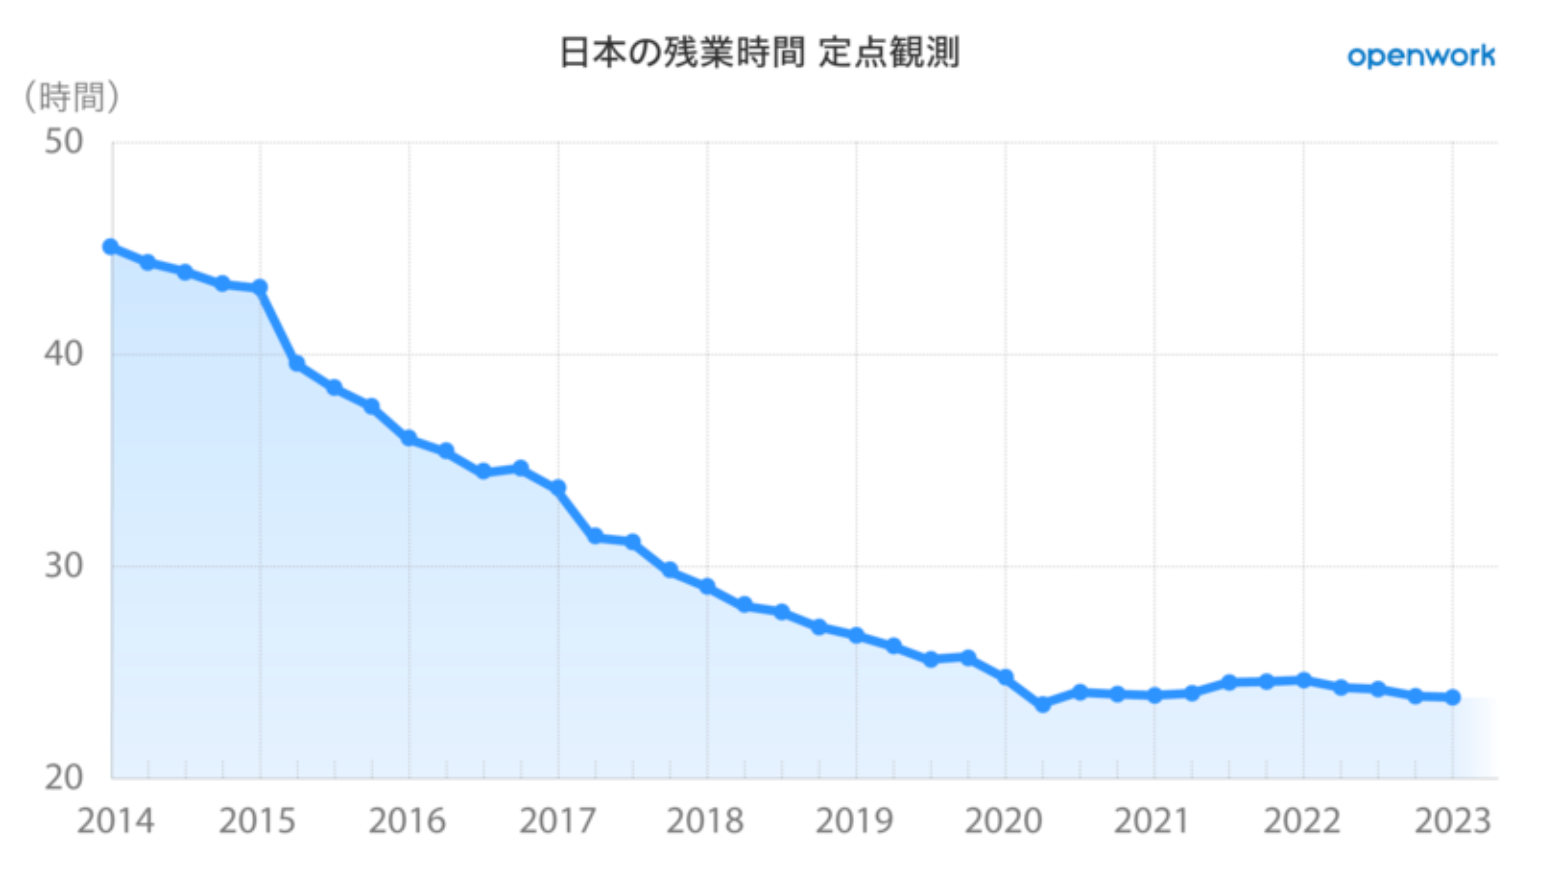 出典元：オープンワーク社「日本の残業時間」定点観測データ＜2023年1-3月＞」より